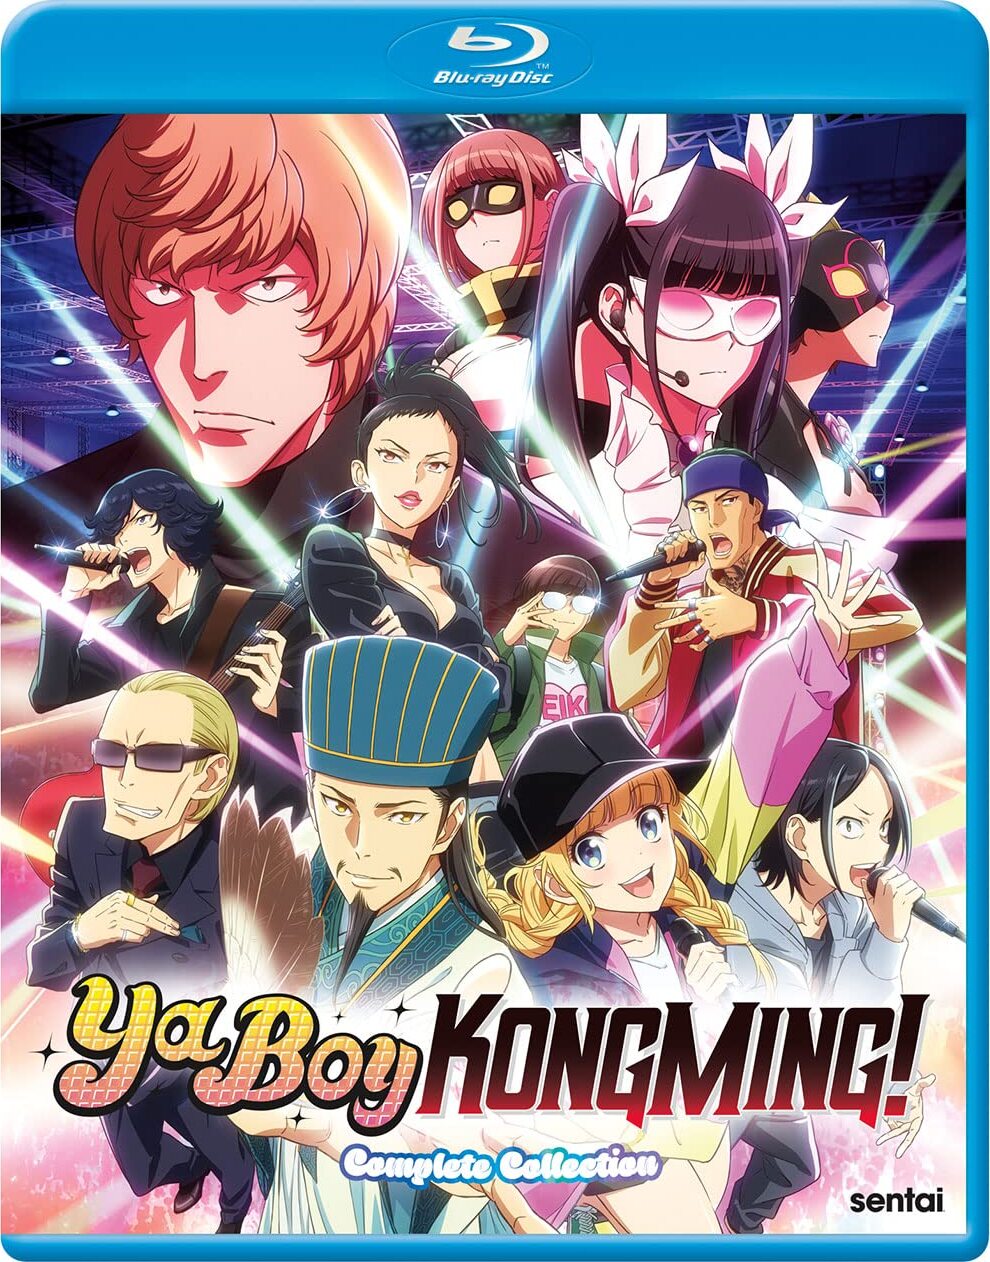 Kongming Suddenly Shows Up  Ya Boy Kongming (Paripi Koumei) EP 9 